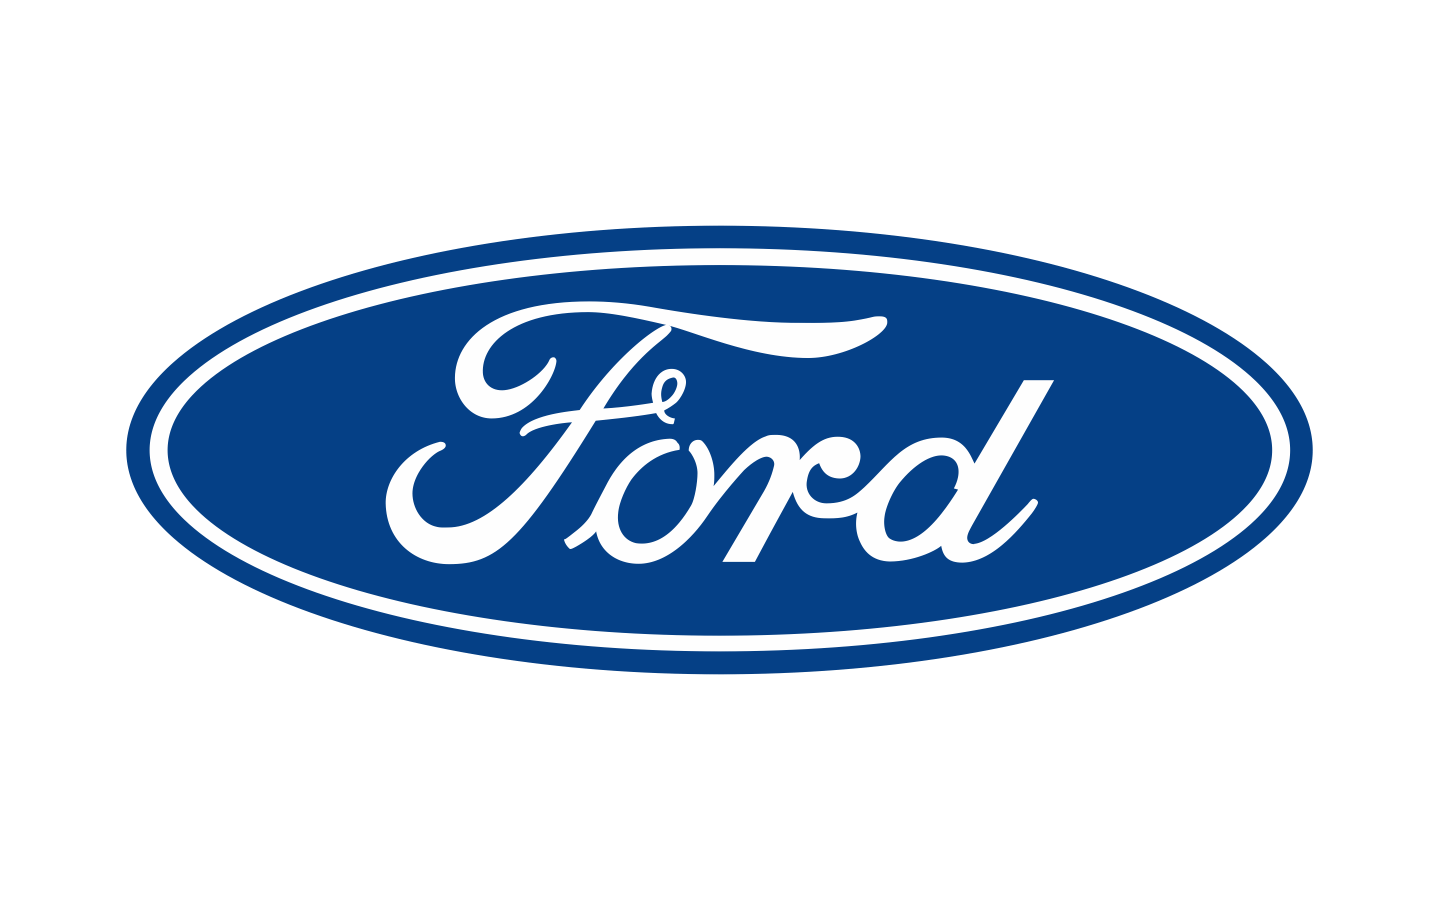 2017 Ford Logo - Ford-logo-1929-1440x900 - Phosphor Studios